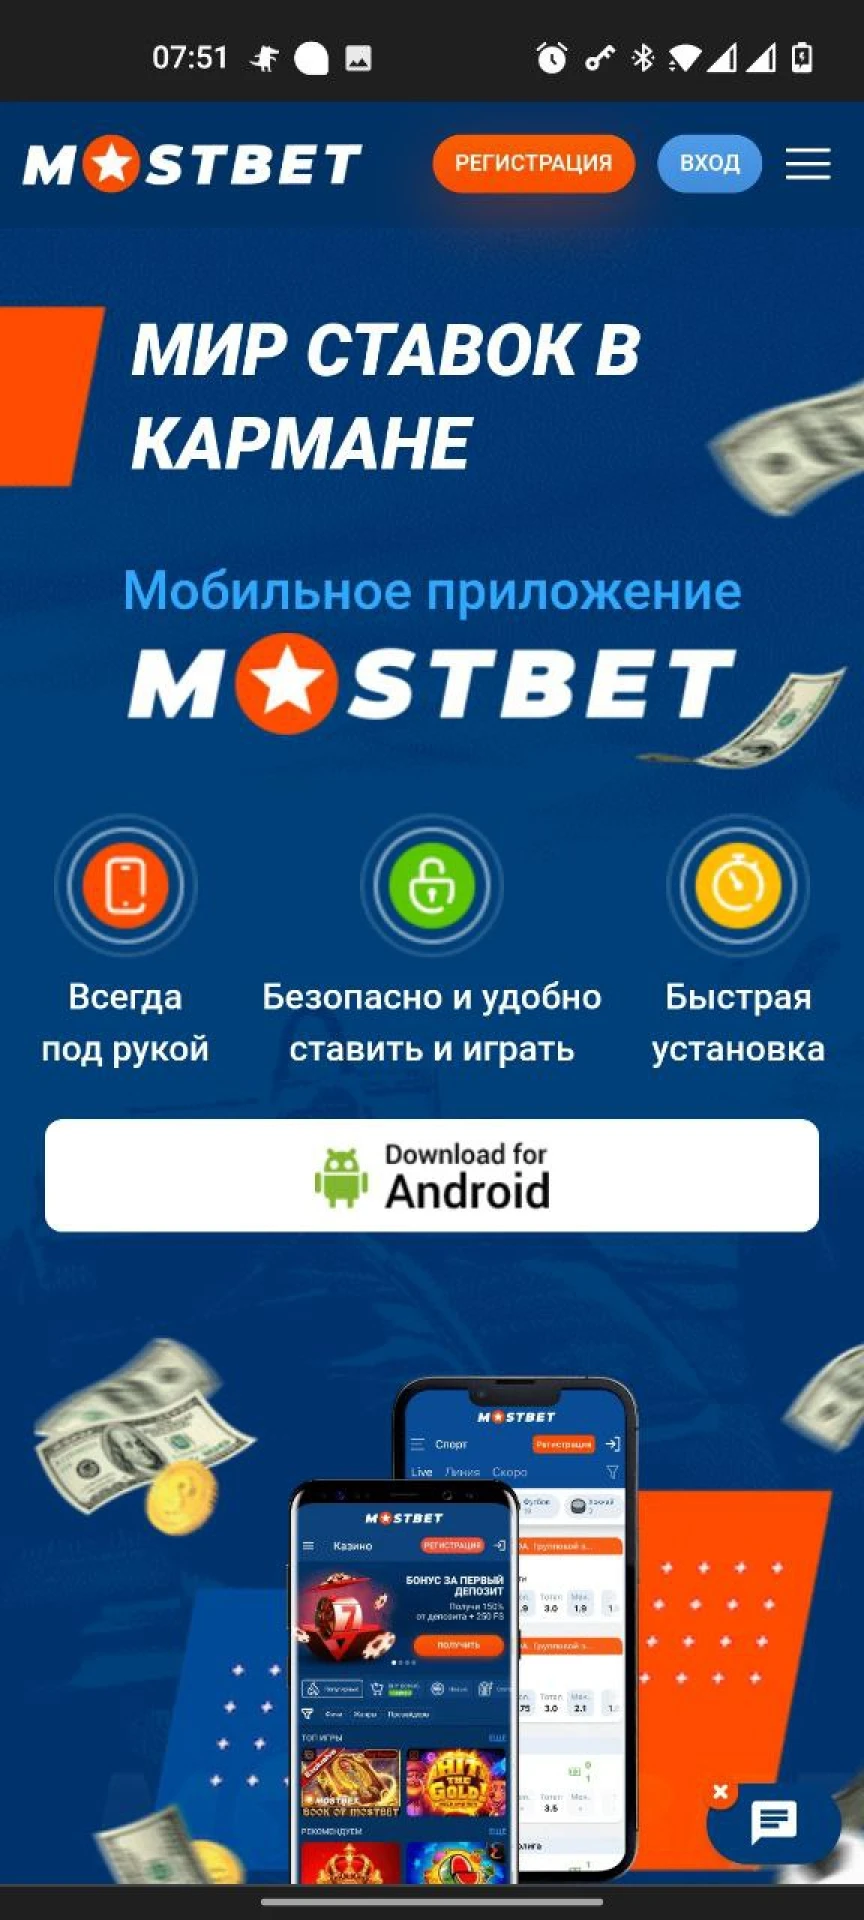 Нажмите кнопку скачивания приложения Mostbet для Android.